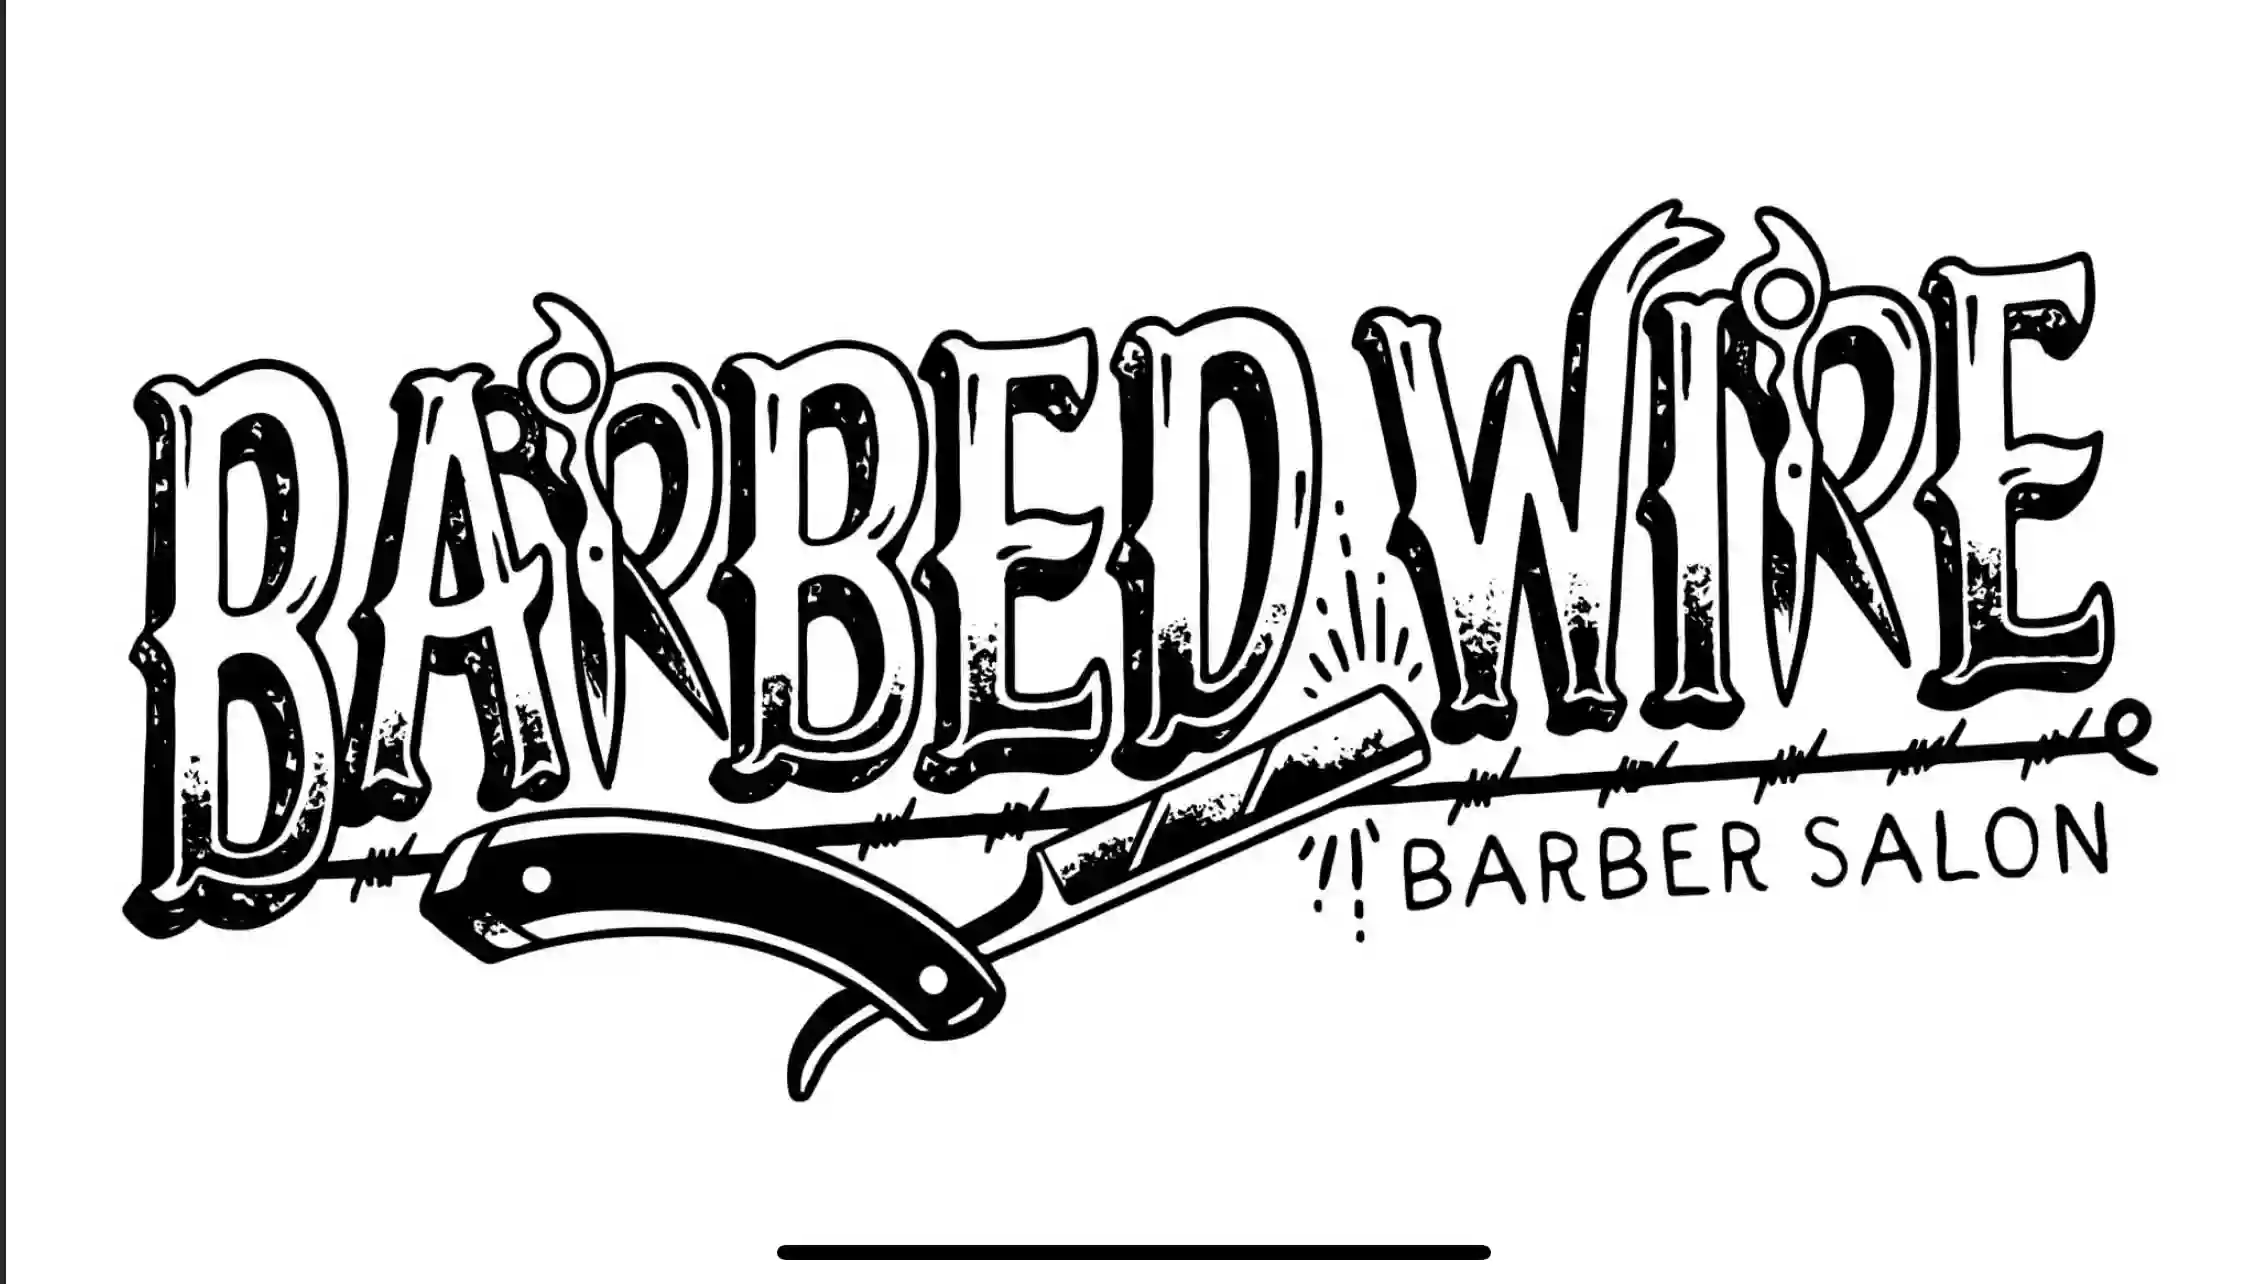 Barbed Wire Barber Salon